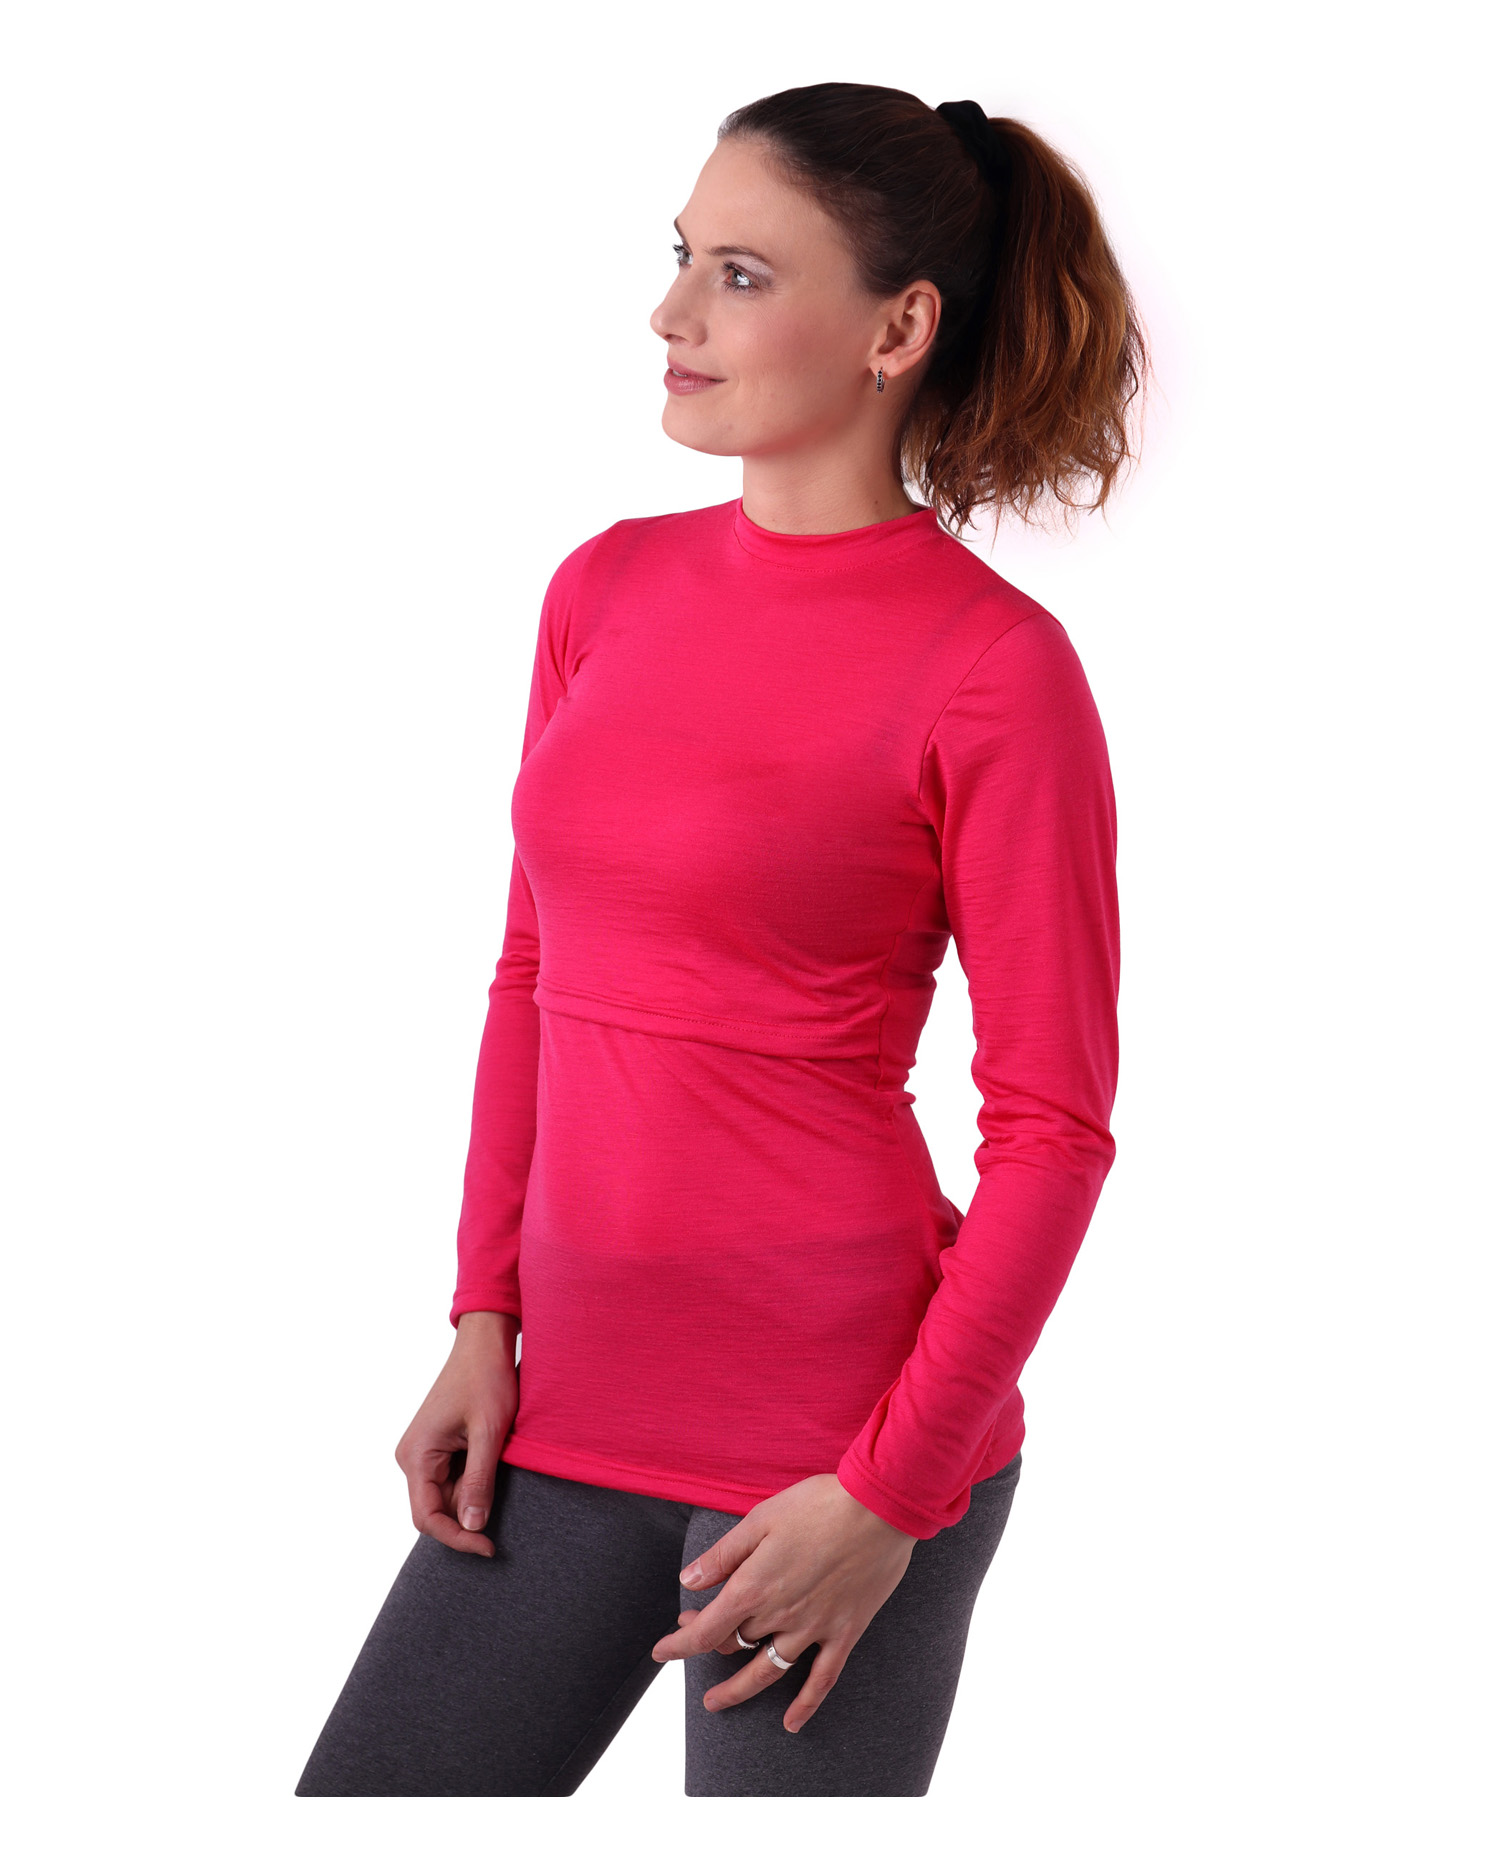 Nursing t-shirt merino wool Meda, long sleeve, pink